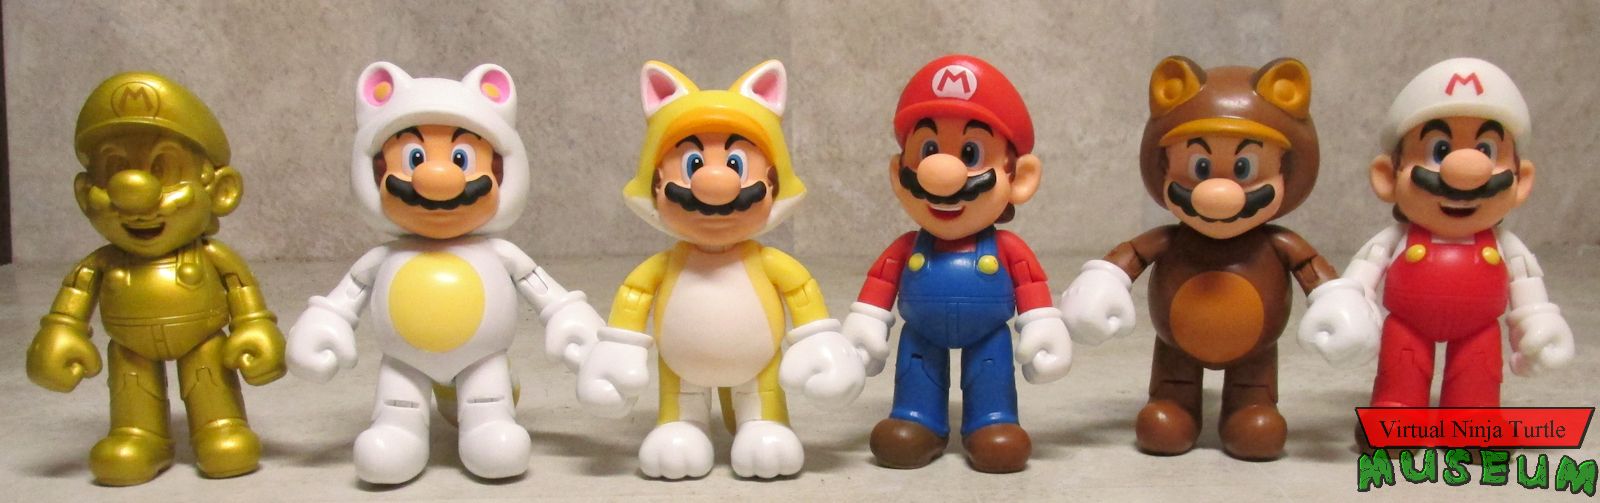 Mario costumes